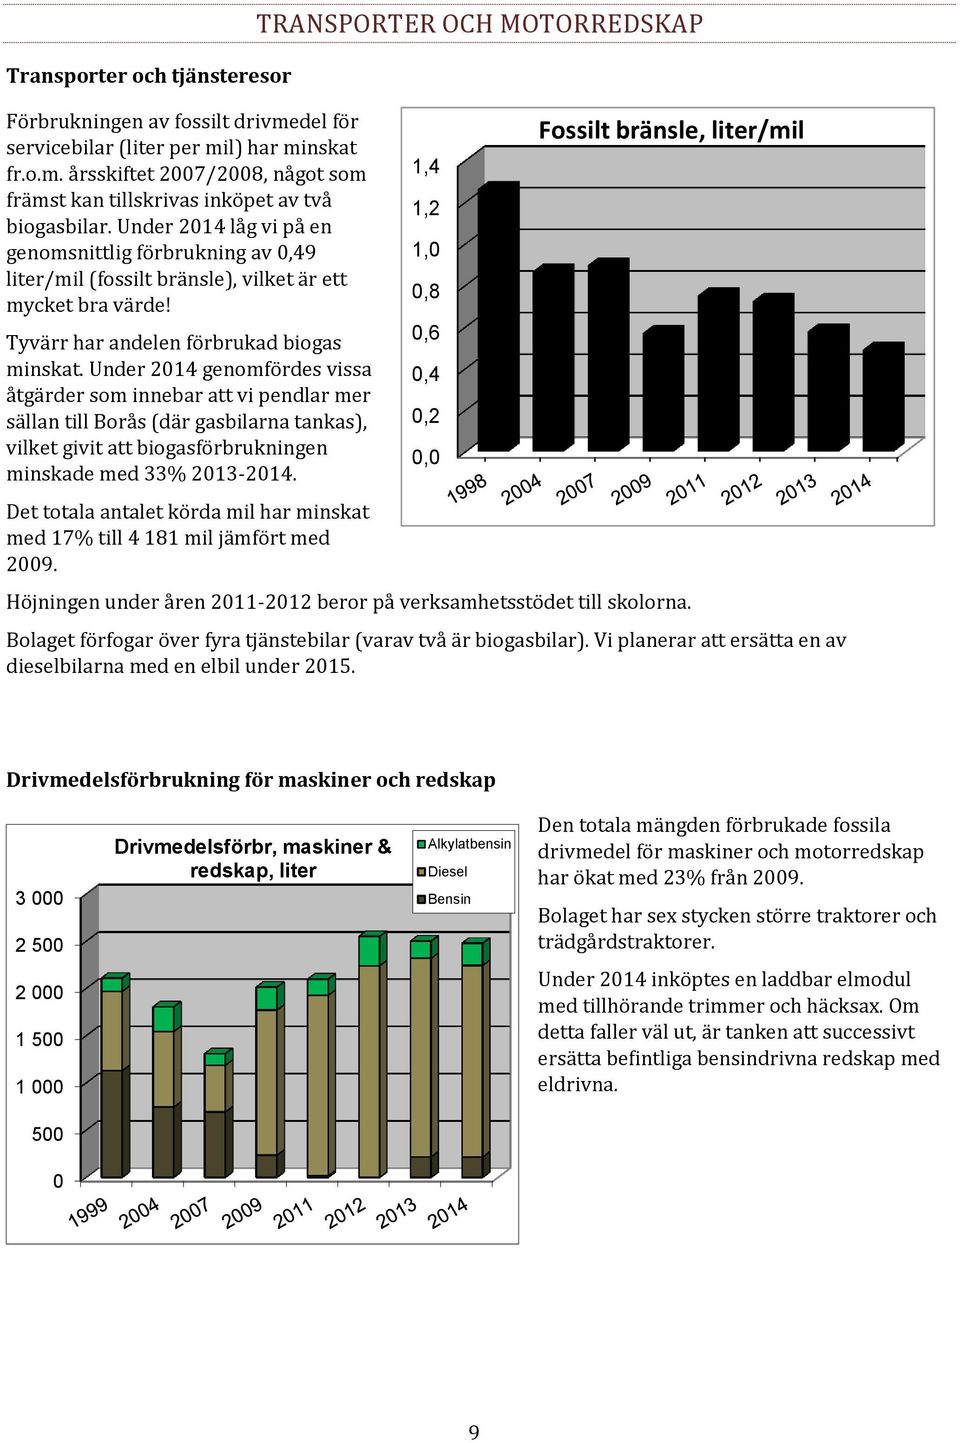 Under 2014 genomfördes vissa åtgärder som innebar att vi pendlar mer sällan till Borås (där gasbilarna tankas), vilket givit att biogasförbrukningen minskade med 33% 2013-2014.